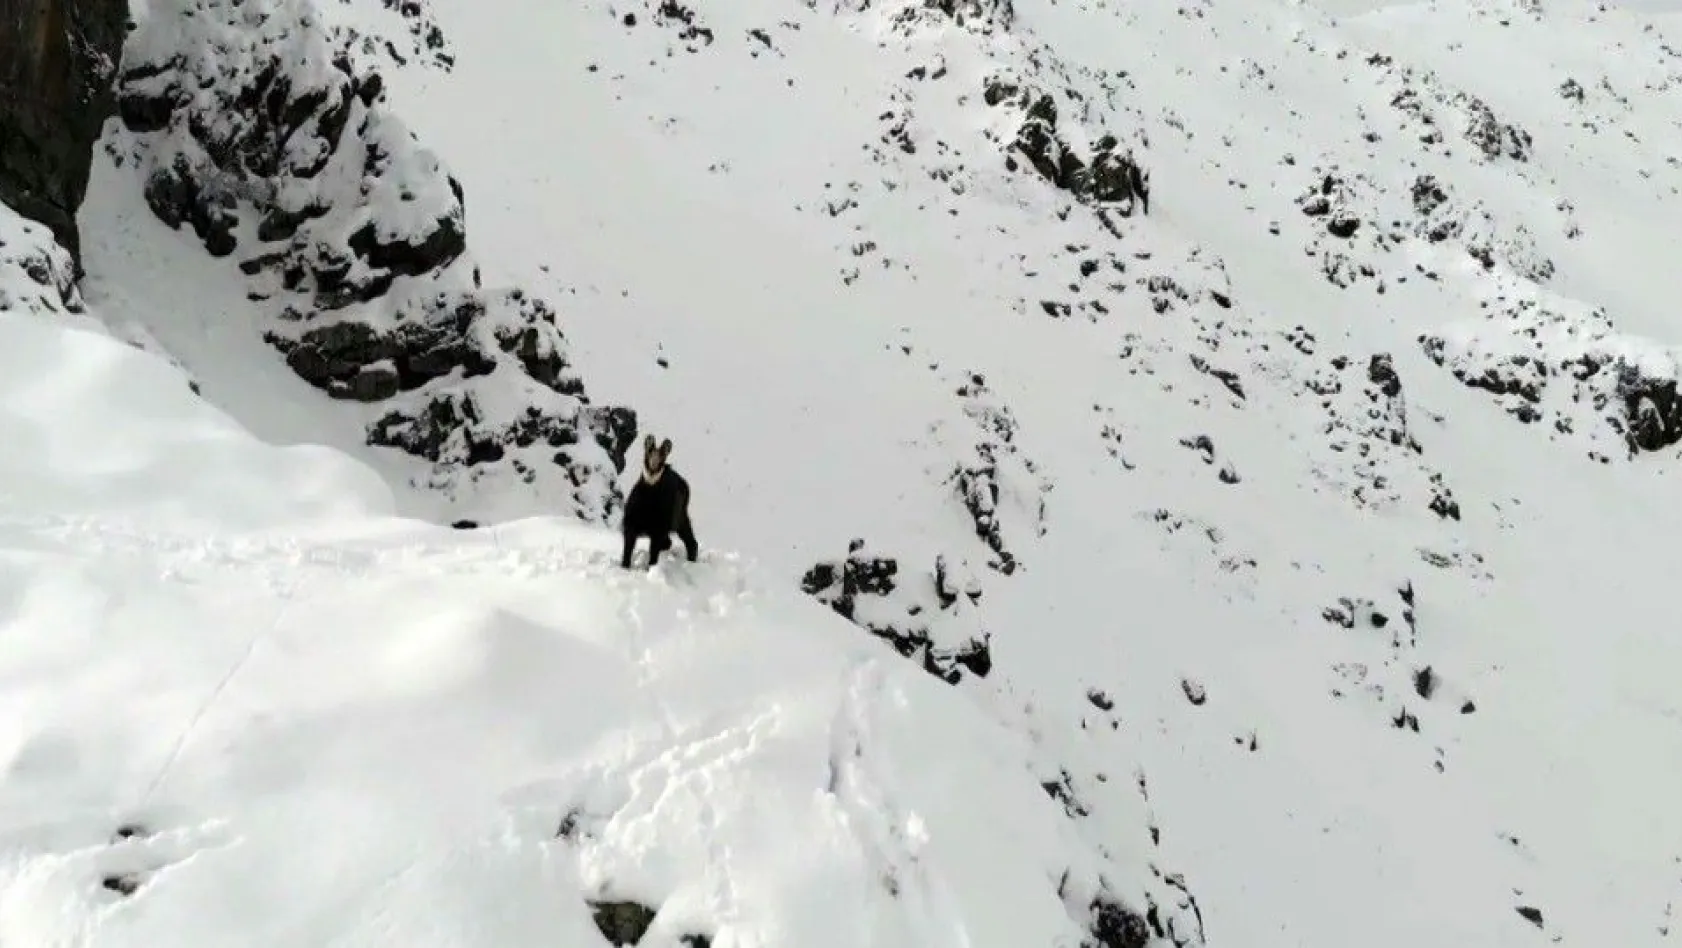 Karla kaplı dağda çengel boynuzlu dağ keçisinin drone ile imtihanı
